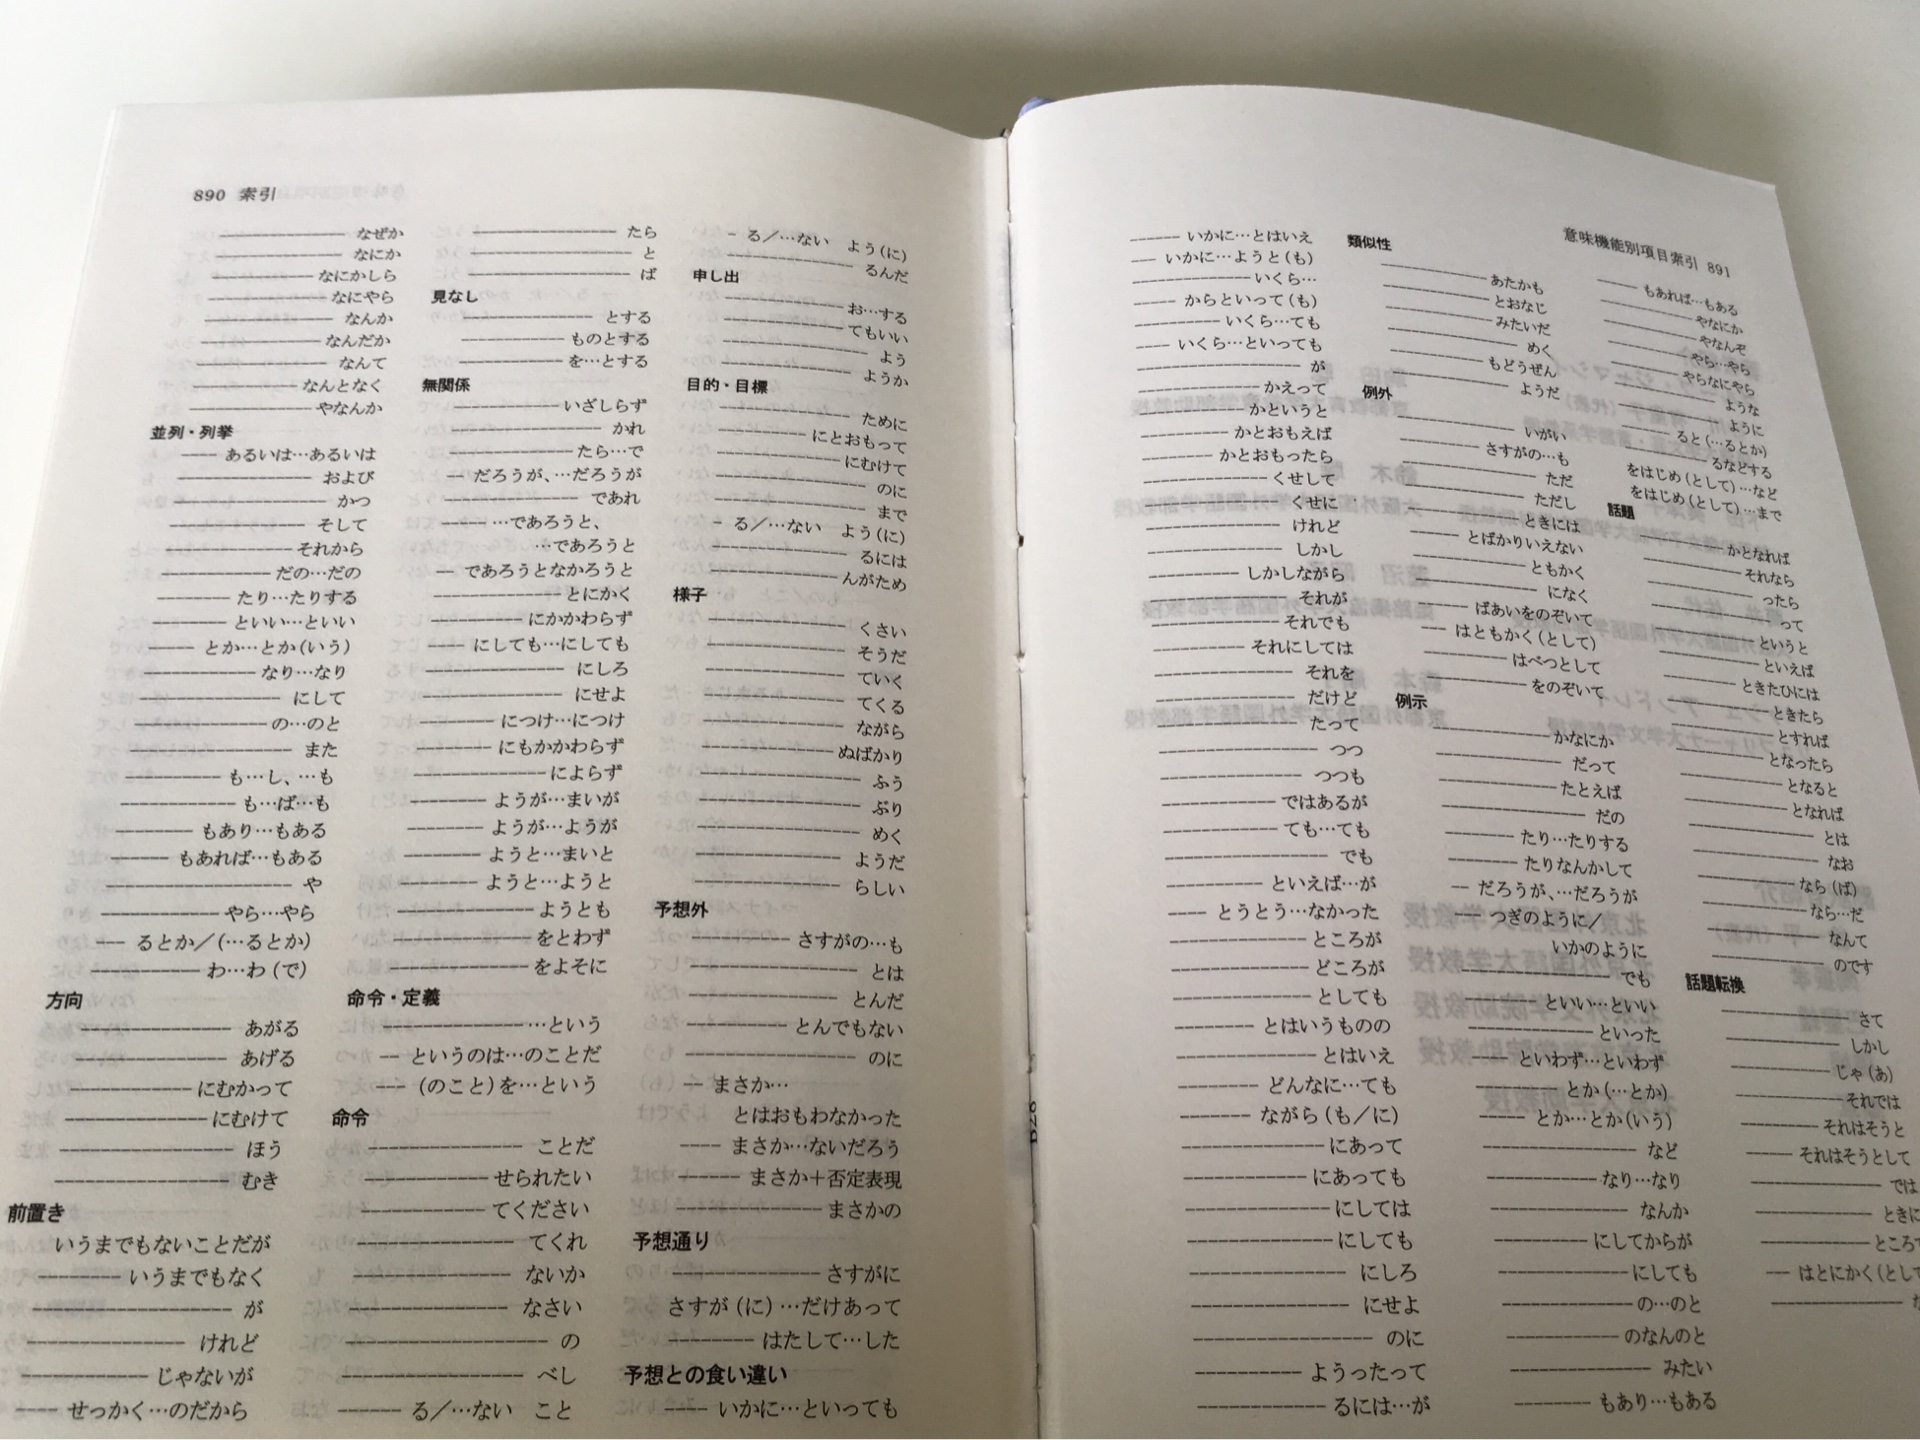 可以说是日语句型方面最好的书之一了，口碑极佳，3000个句型远超一般的同类书籍，汉字有注音，最后有五十音和按用途归类的索引，便于查询，并且不与jlpt挂钩，这才是我要的。纸张有点薄，好在是辞典，有硬封面。纸质书就是比扫描的pdf看着舒服。包装就一般了，没做任何防护，就是个袋子装起来，幸好没破损啥的。